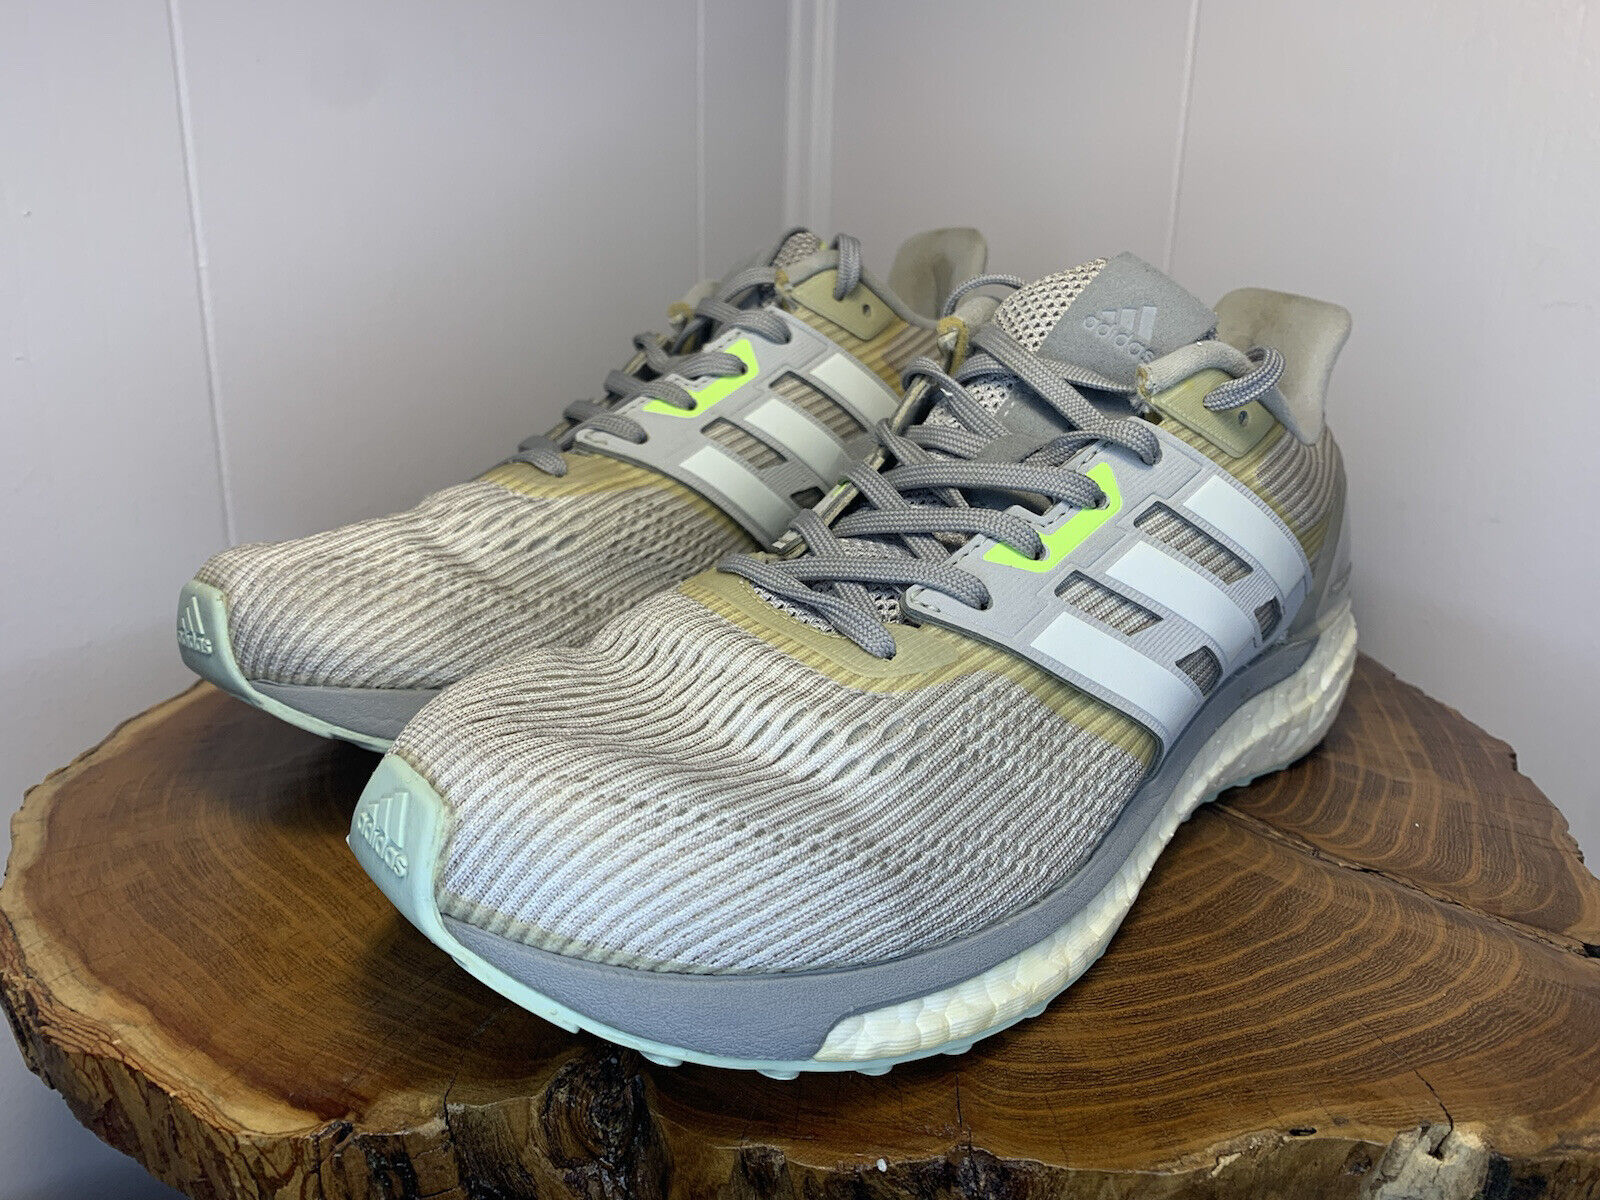 Toro Conciso rival Zapatos para correr para mujer Adidas Supernova BOOST Continental BA9937  gris talla 8,5 | eBay